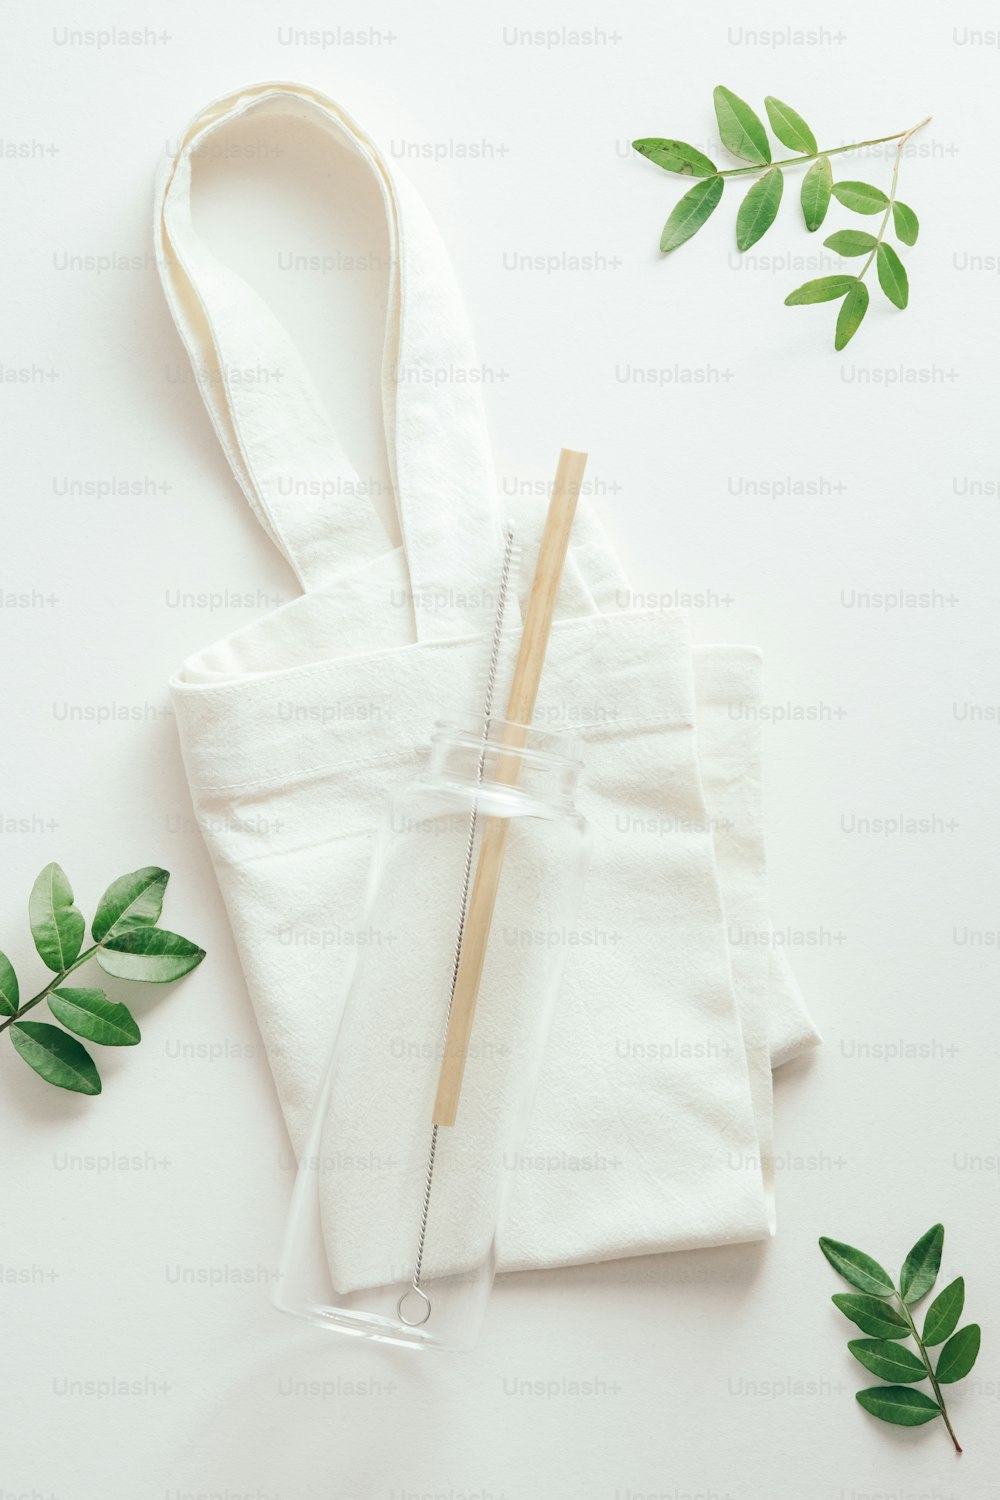 緑の葉が付いた布の買い物袋に竹のストローが付いた再利用可能な環境に優しいガラスのウォーターボトル。サステナブルなライフスタイルのコンセプト。